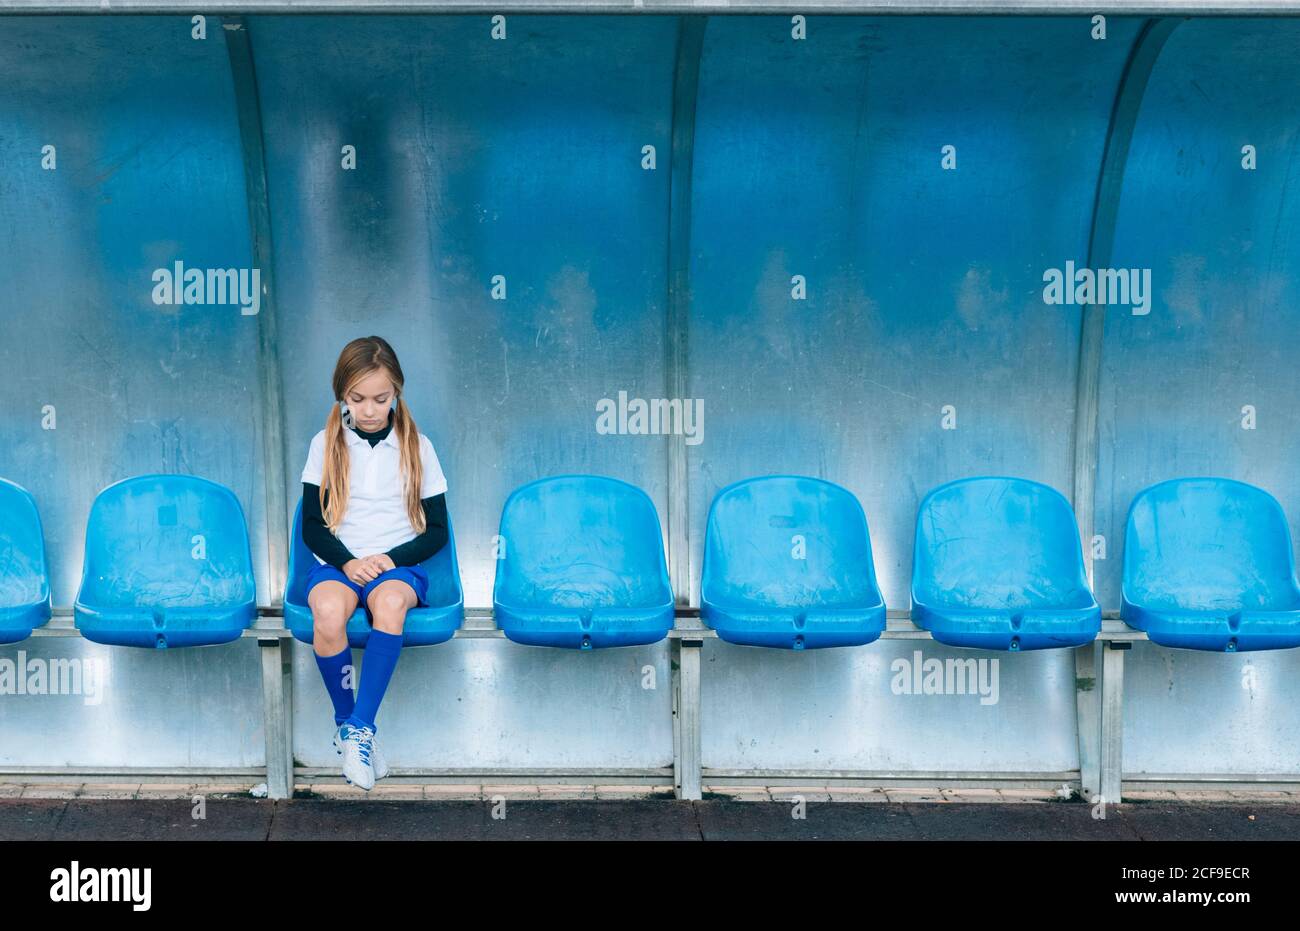 La lunghezza intera ha frustrato la ragazza di preteen in uniforme di calcio che siede da solo sul sedile in plastica blu dopo il fallimento della partita nel club sportivo Foto Stock